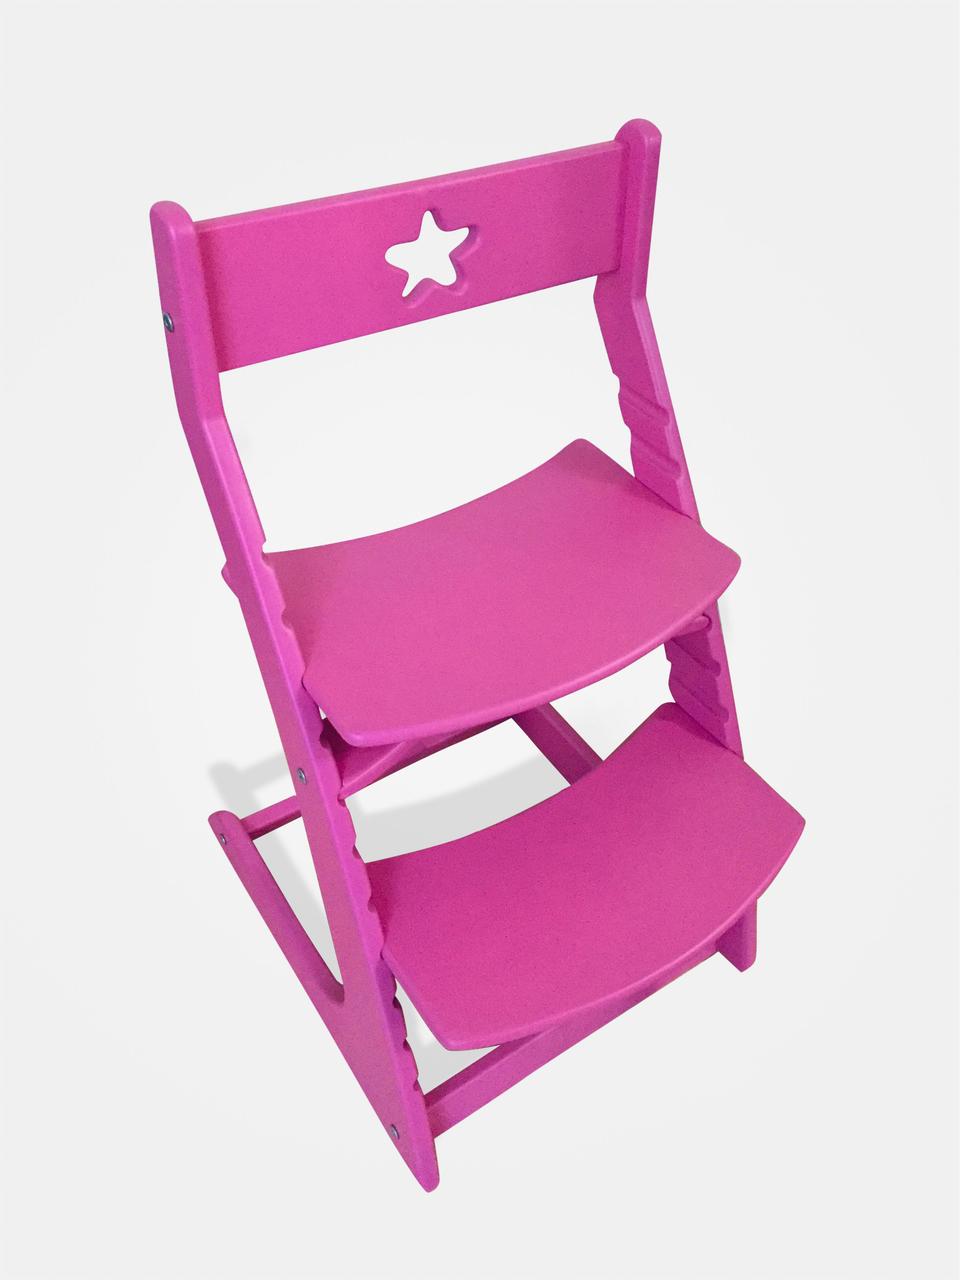 Регулируемый десткий стул "Ростик/Rostik" (Dark pink)